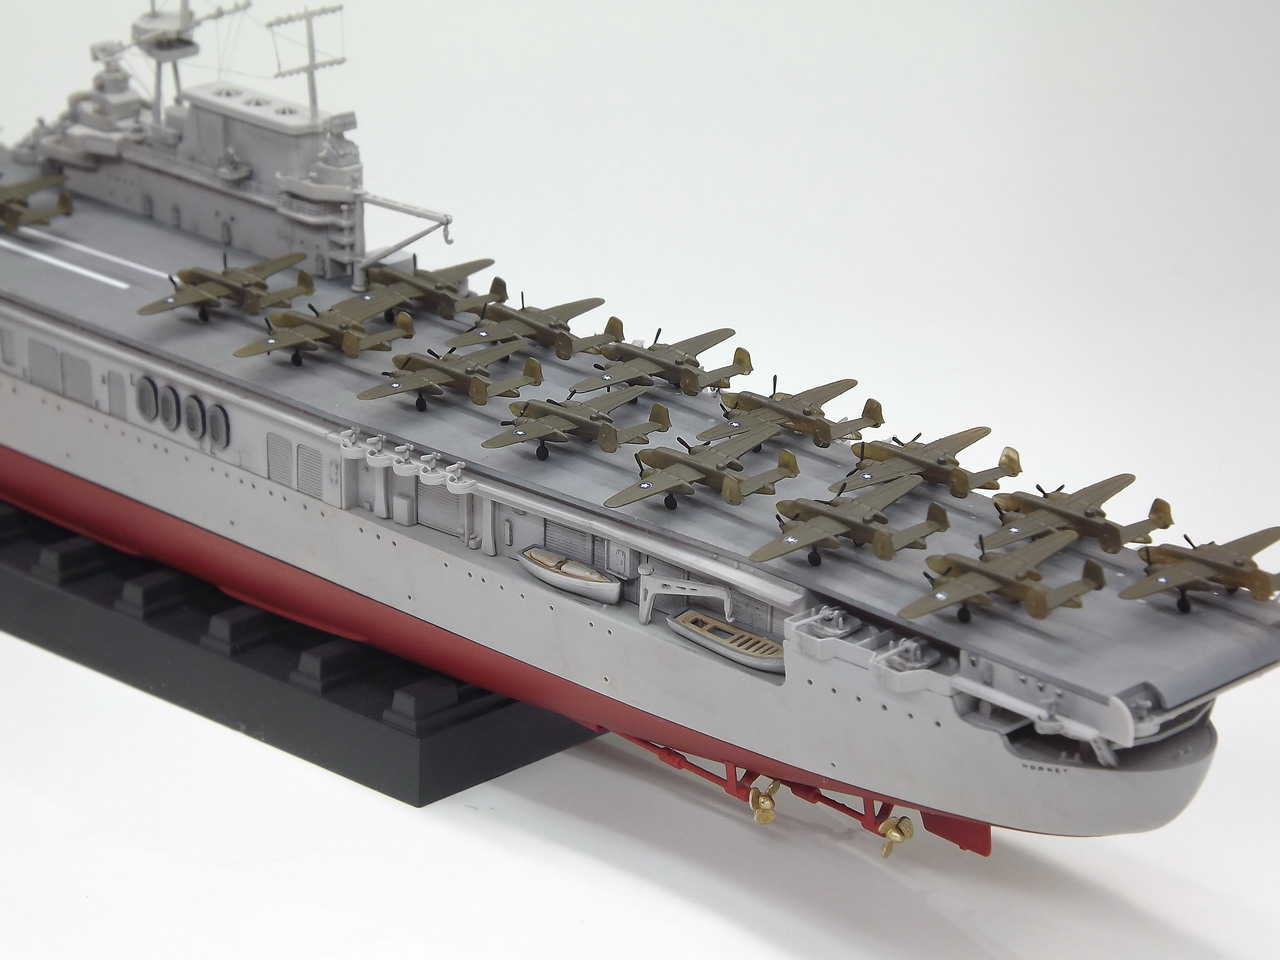 小号手舰船模型 小航母系列 1:700 美国大黄蜂号航母 80901